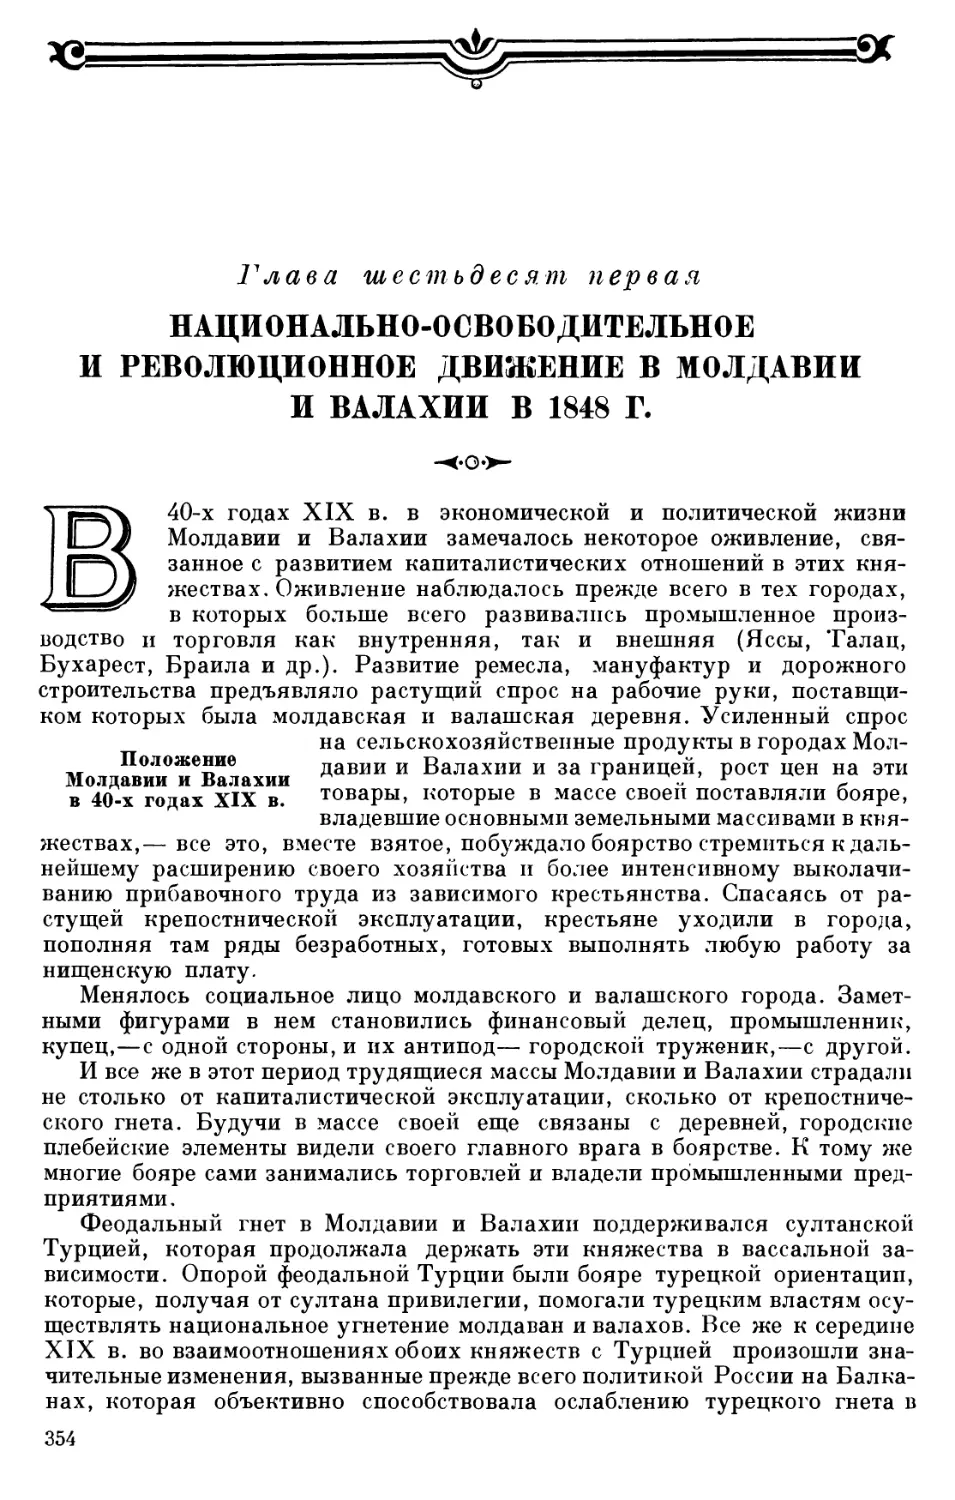 Положение Молдавии и Валахии в 40-х годах XIX в.